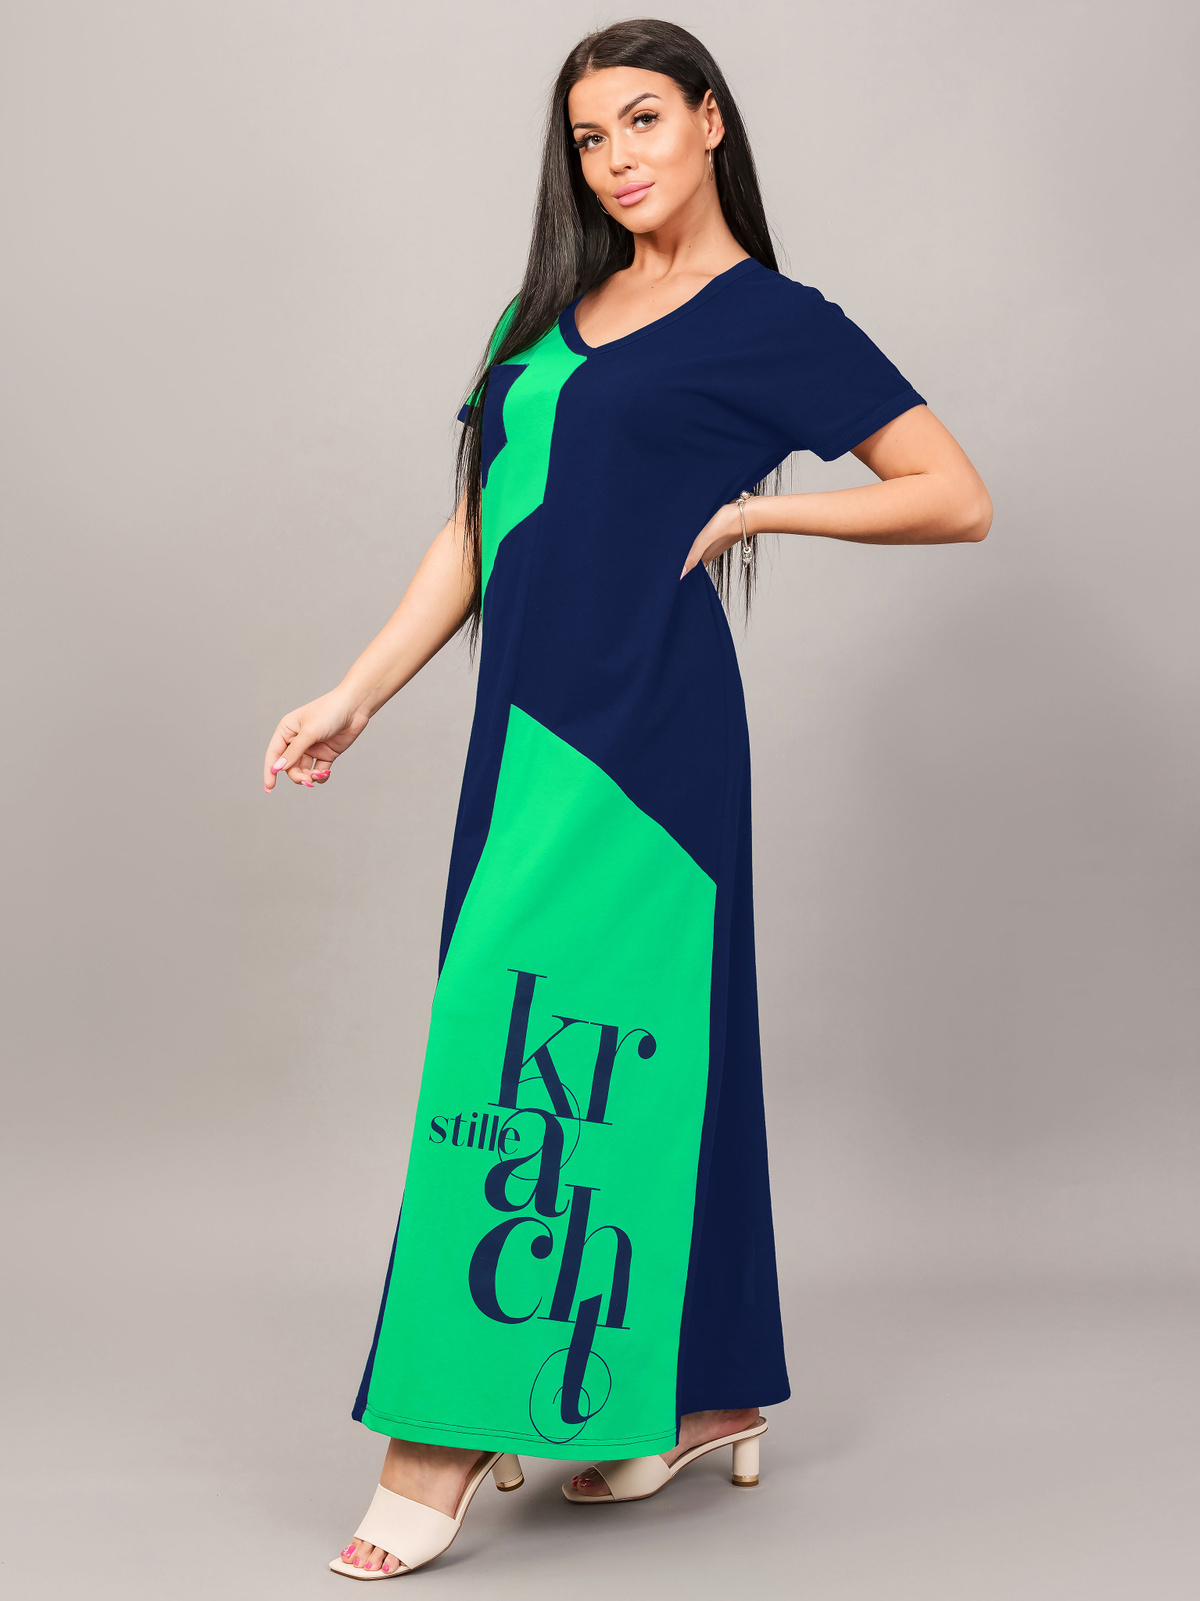 Платье женское длинное домашнее больших размеров ROYALTEX